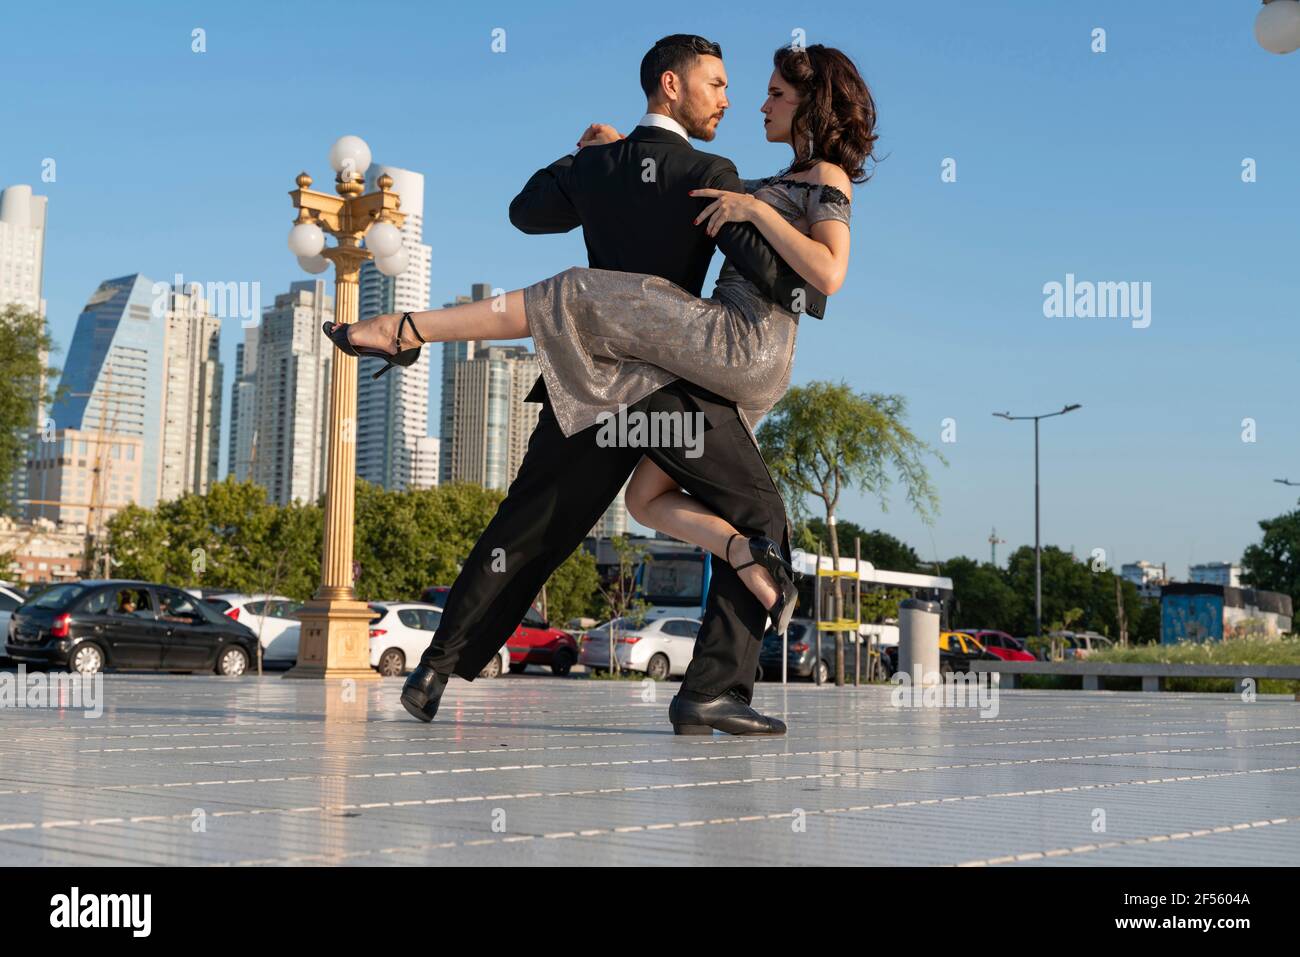 Männliche und weibliche Tänzerinnen schauen sich beim Üben an Tango-Tanz auf dem Fußweg Stockfoto